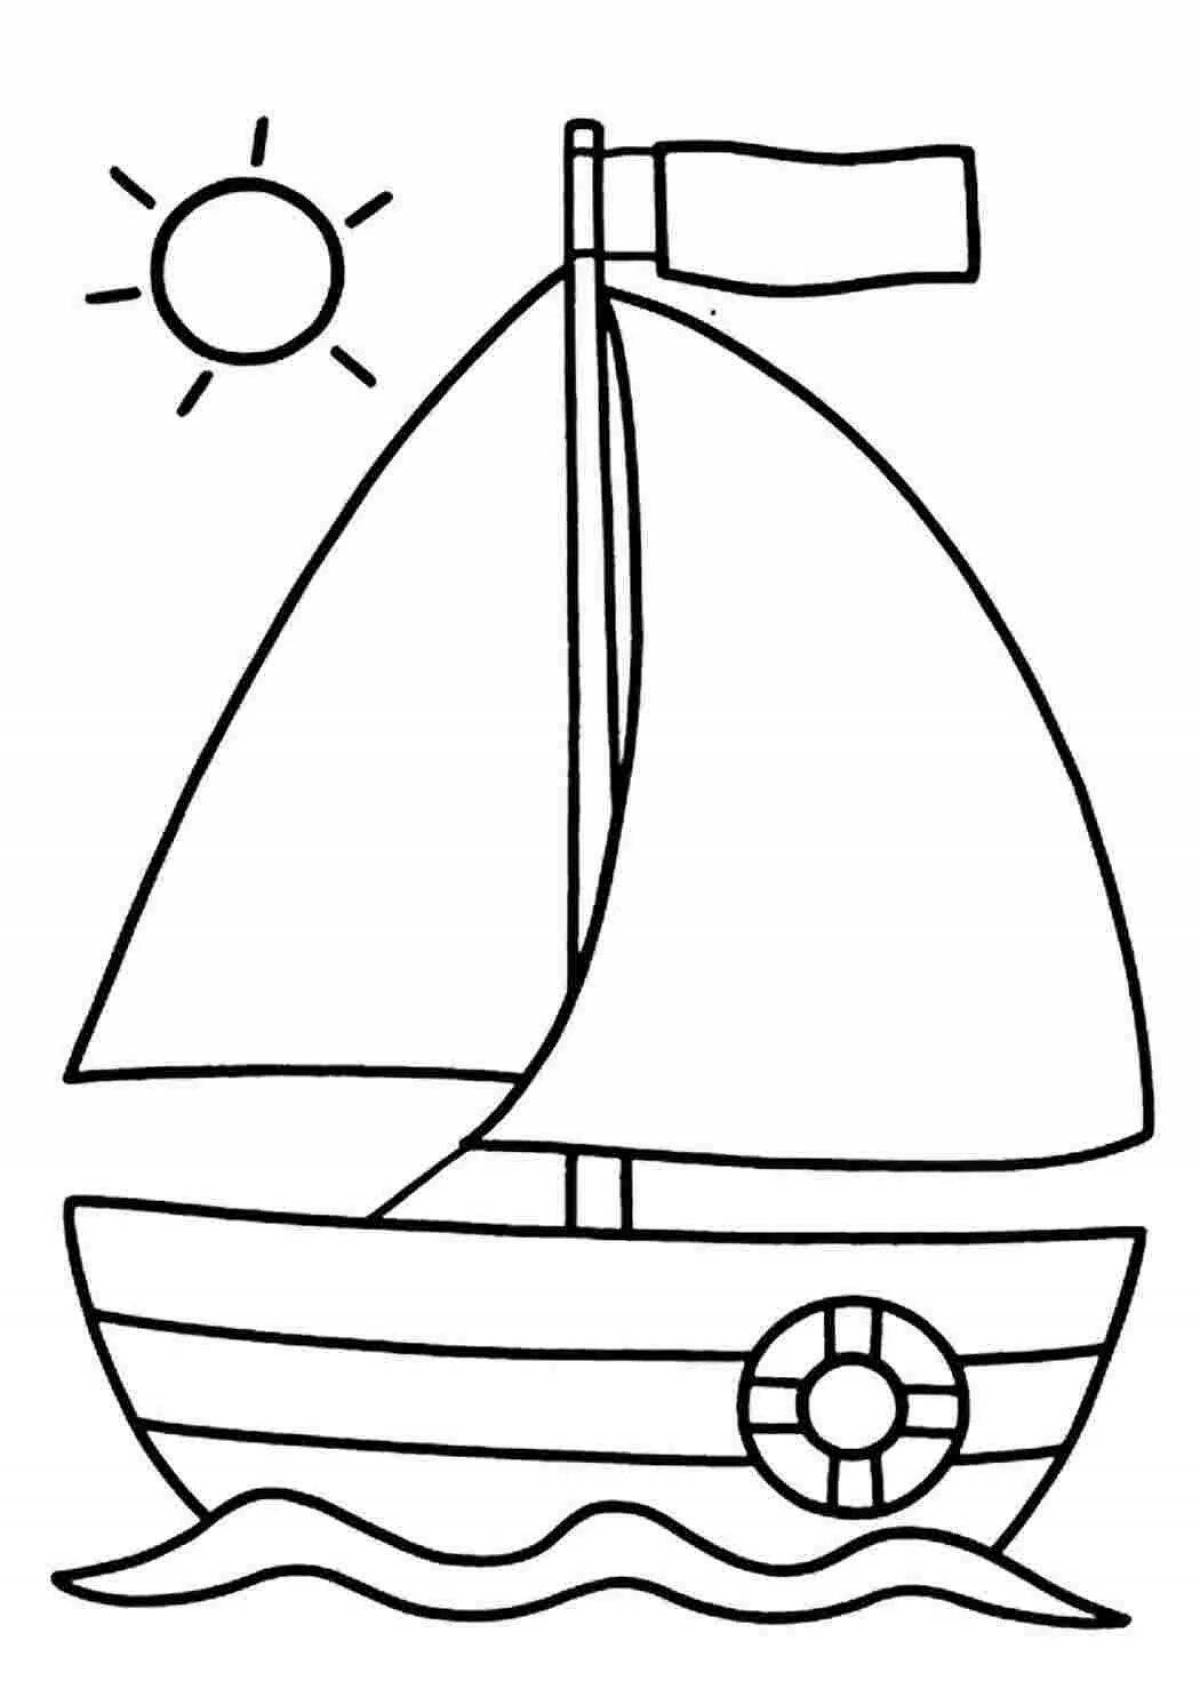 Увлекательная раскраска лодки для детей 6-7 лет